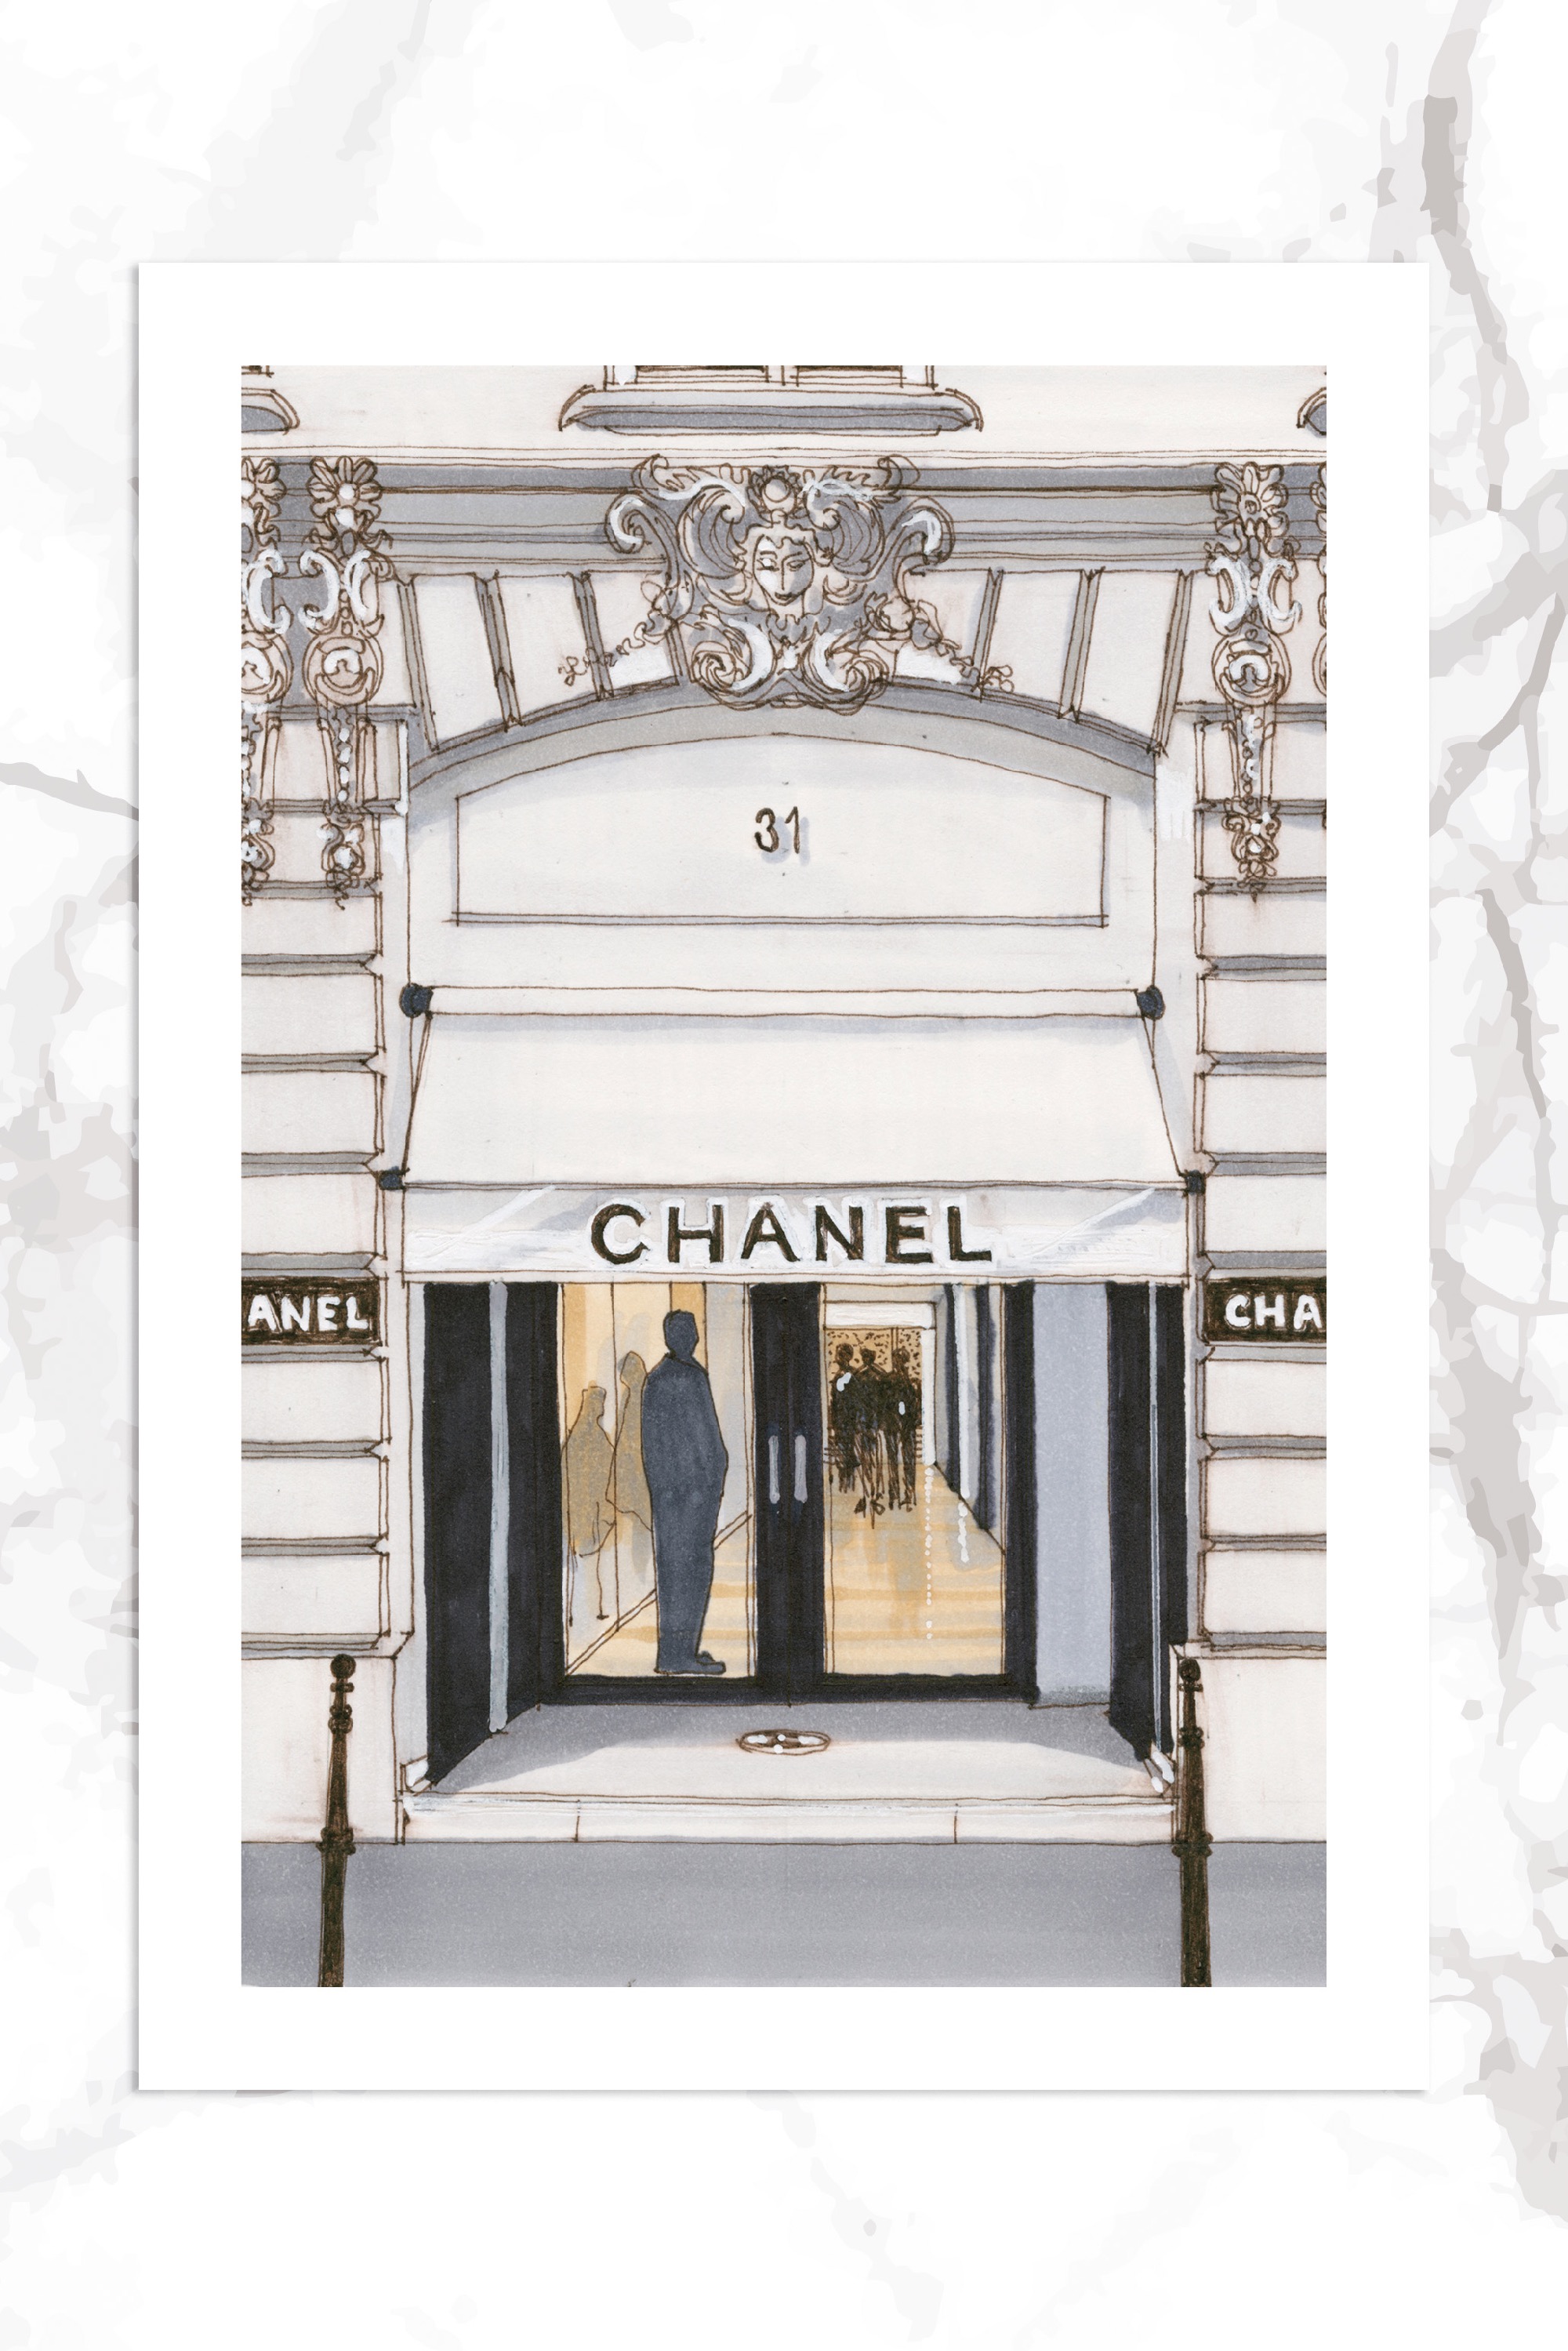 Chanel, Paris — Desmond Freeman